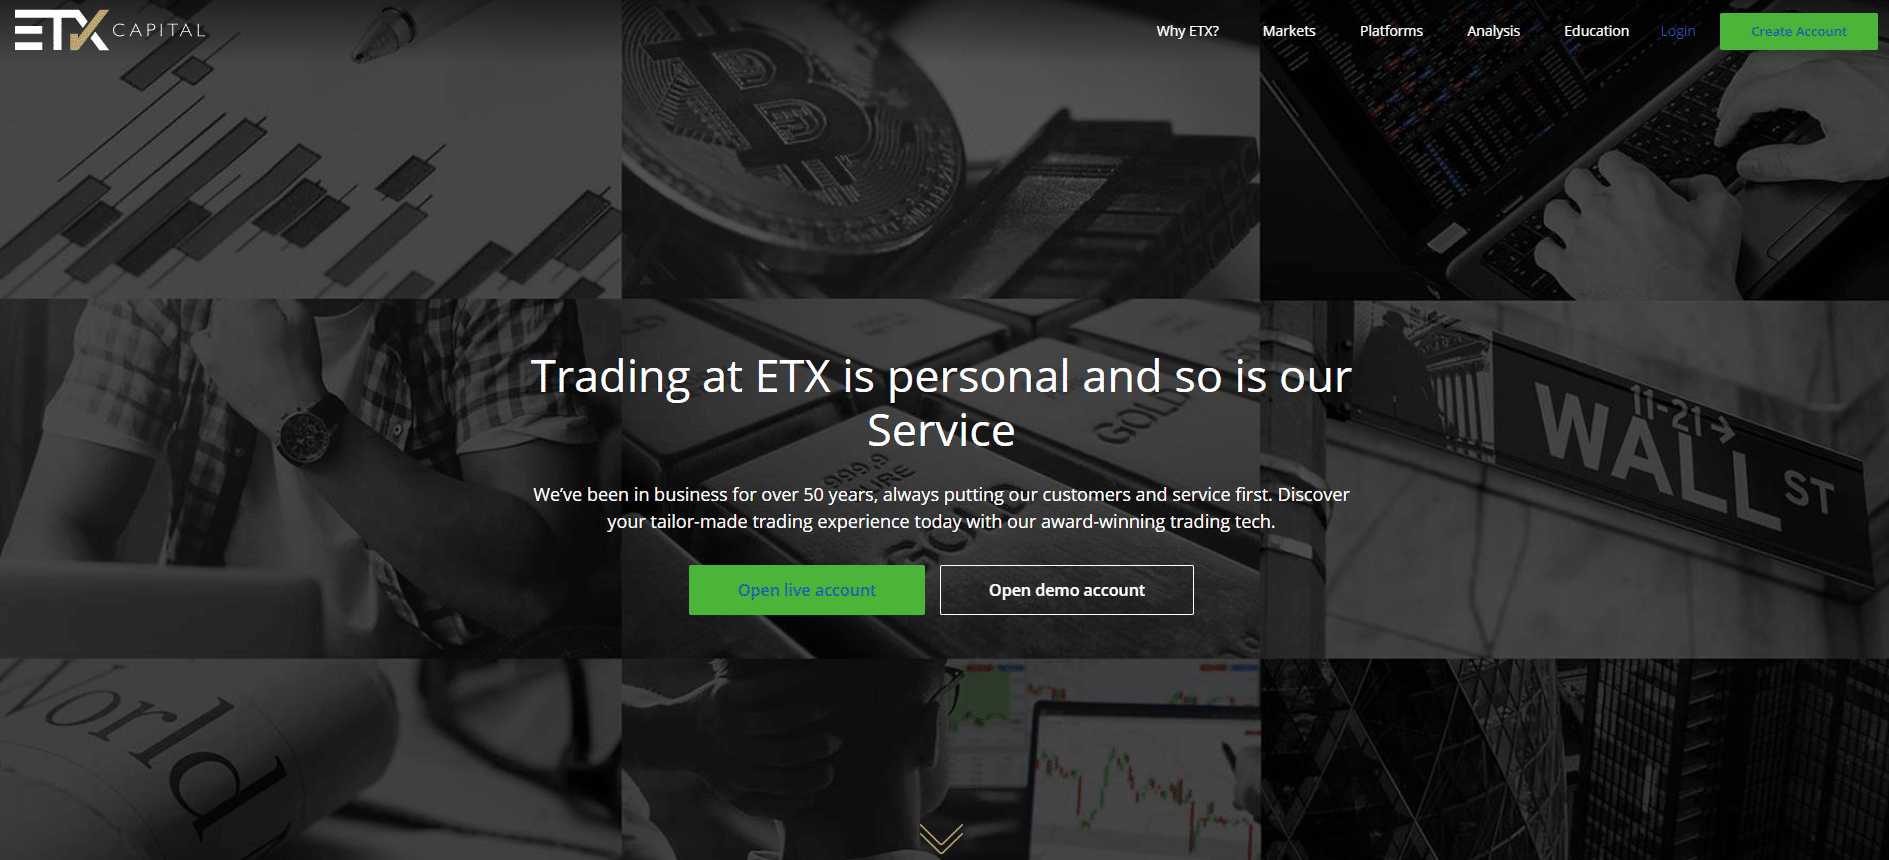 ETX Capital hivatalos weboldala